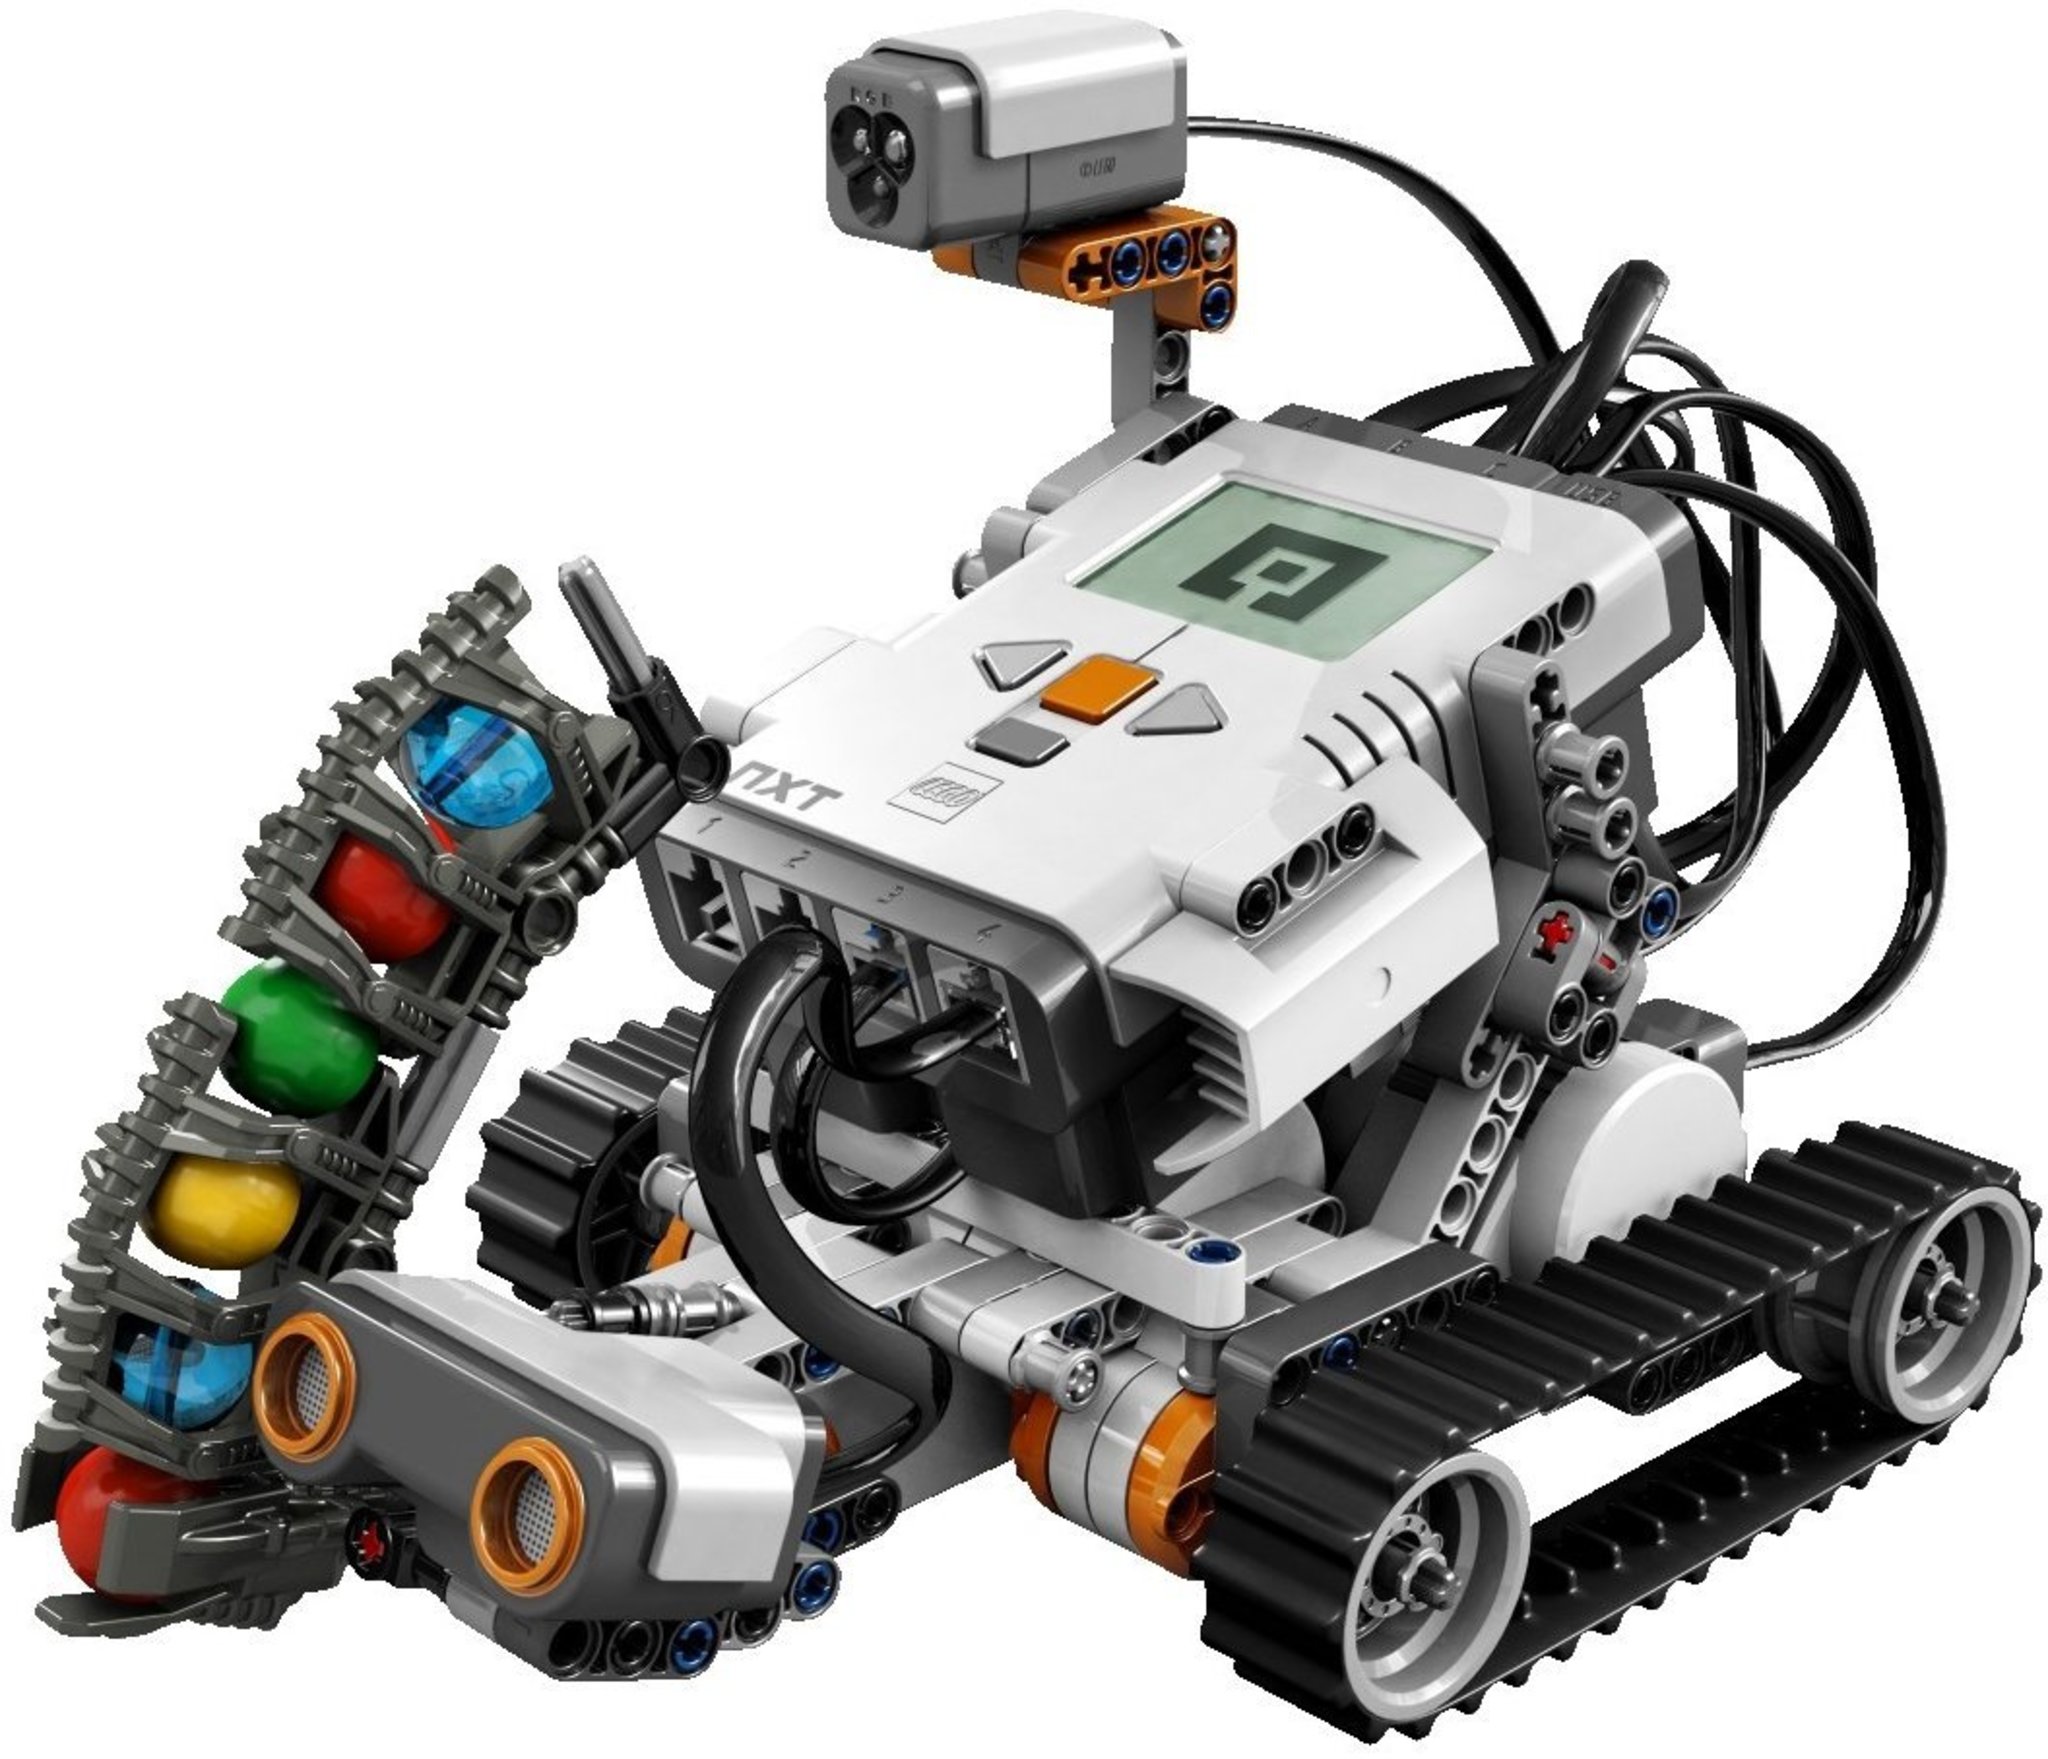 รวมกัน 91+ ภาพ หุ่นยนต์ของ Lego Mindstorms รุ่นแรก มีชื่อรุ่นว่าอะไร ...